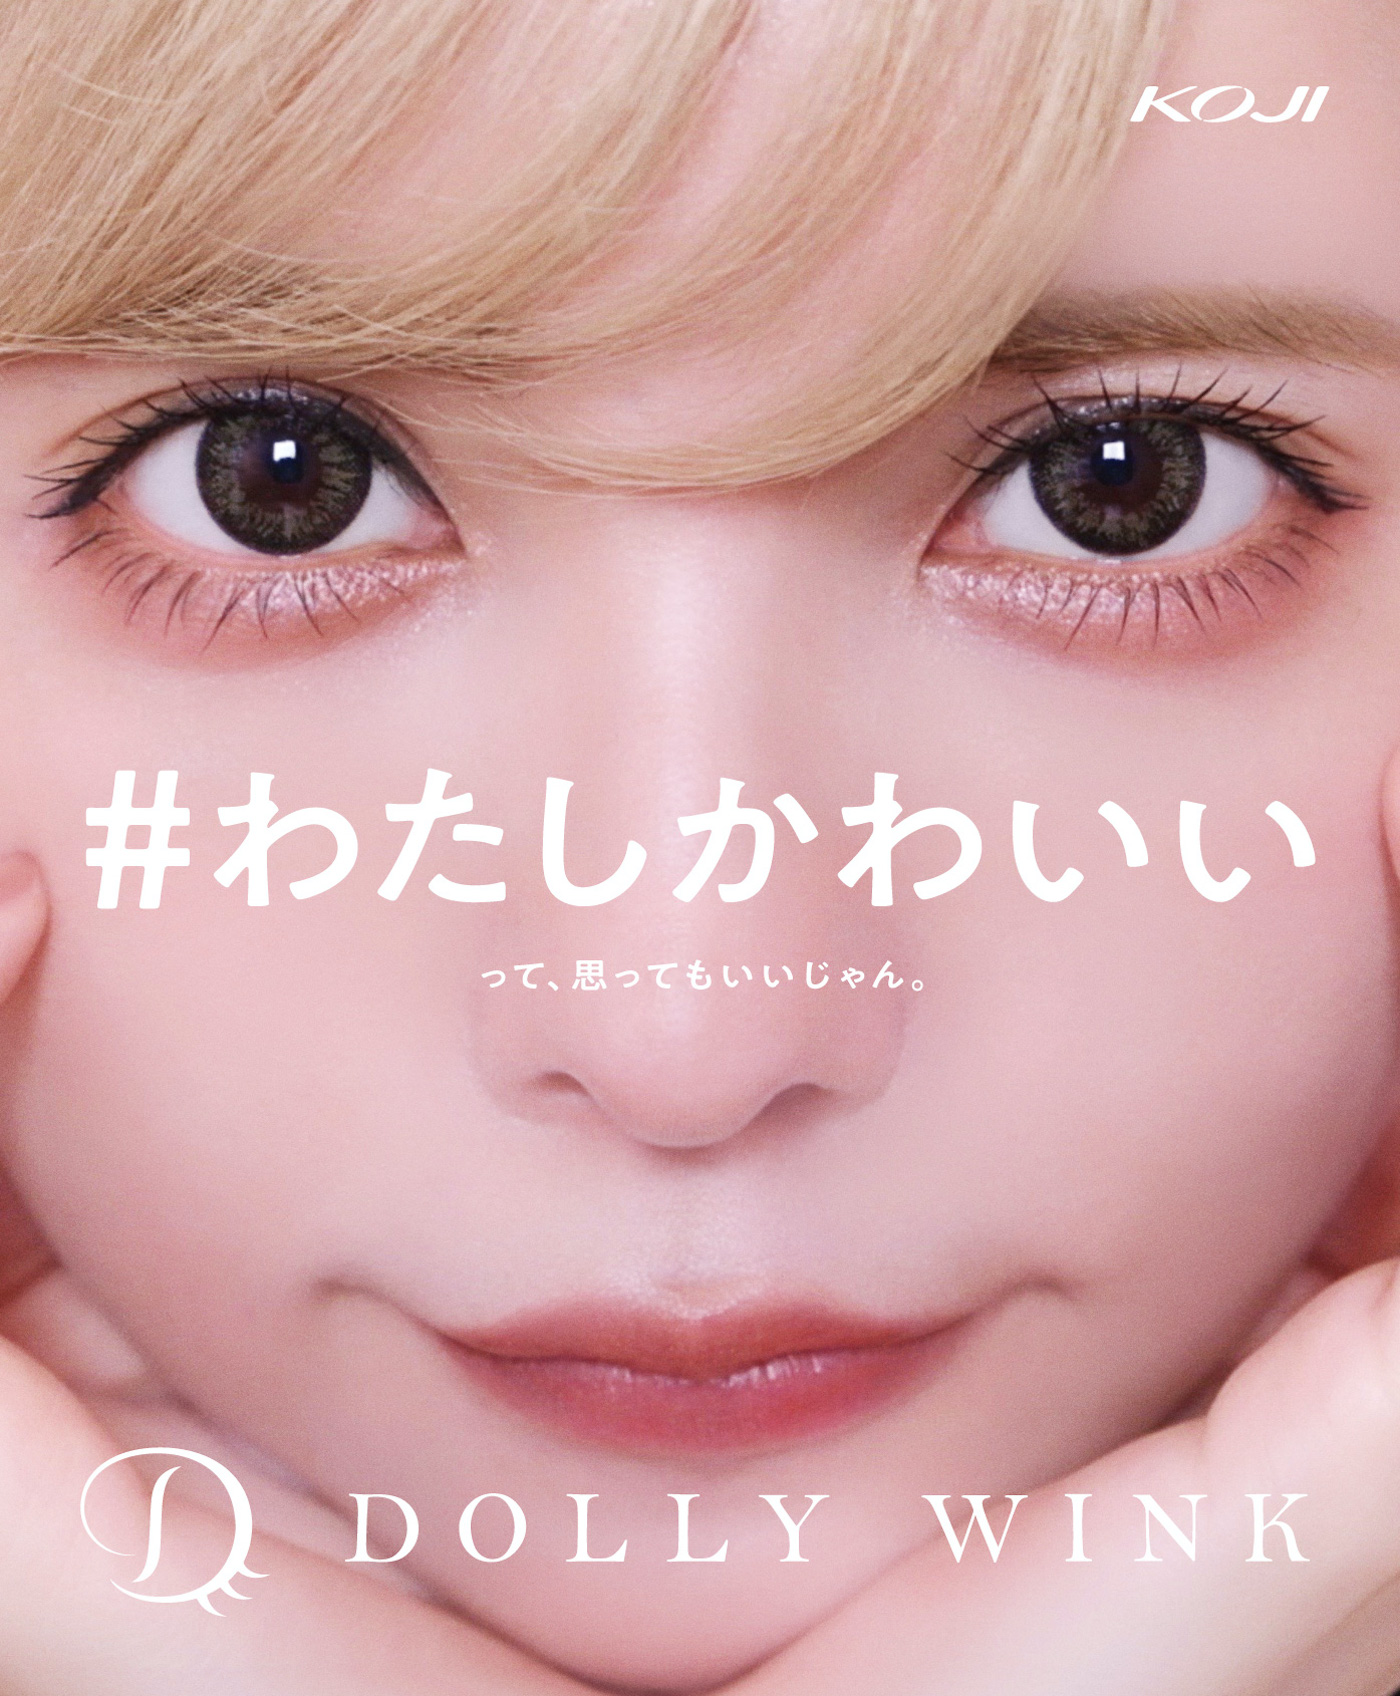 益若つばさ、顔面ドアップの巨大広告が渋谷の街に登場（アイメイクブランド「DOLLY WINK （ドーリウインク）」）